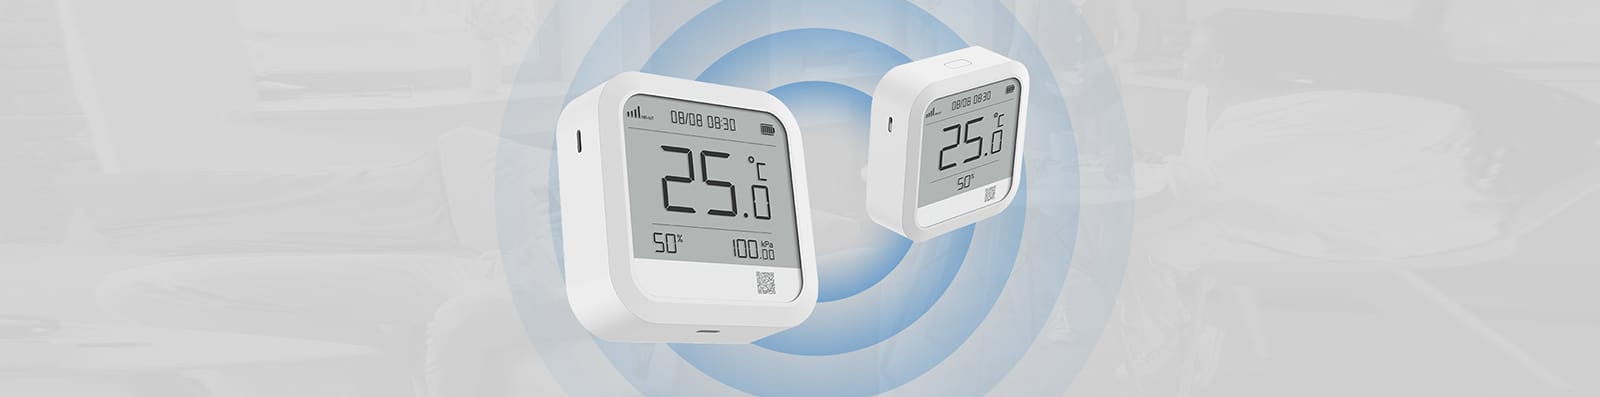 QingPing Temperature & Humidity Monitor